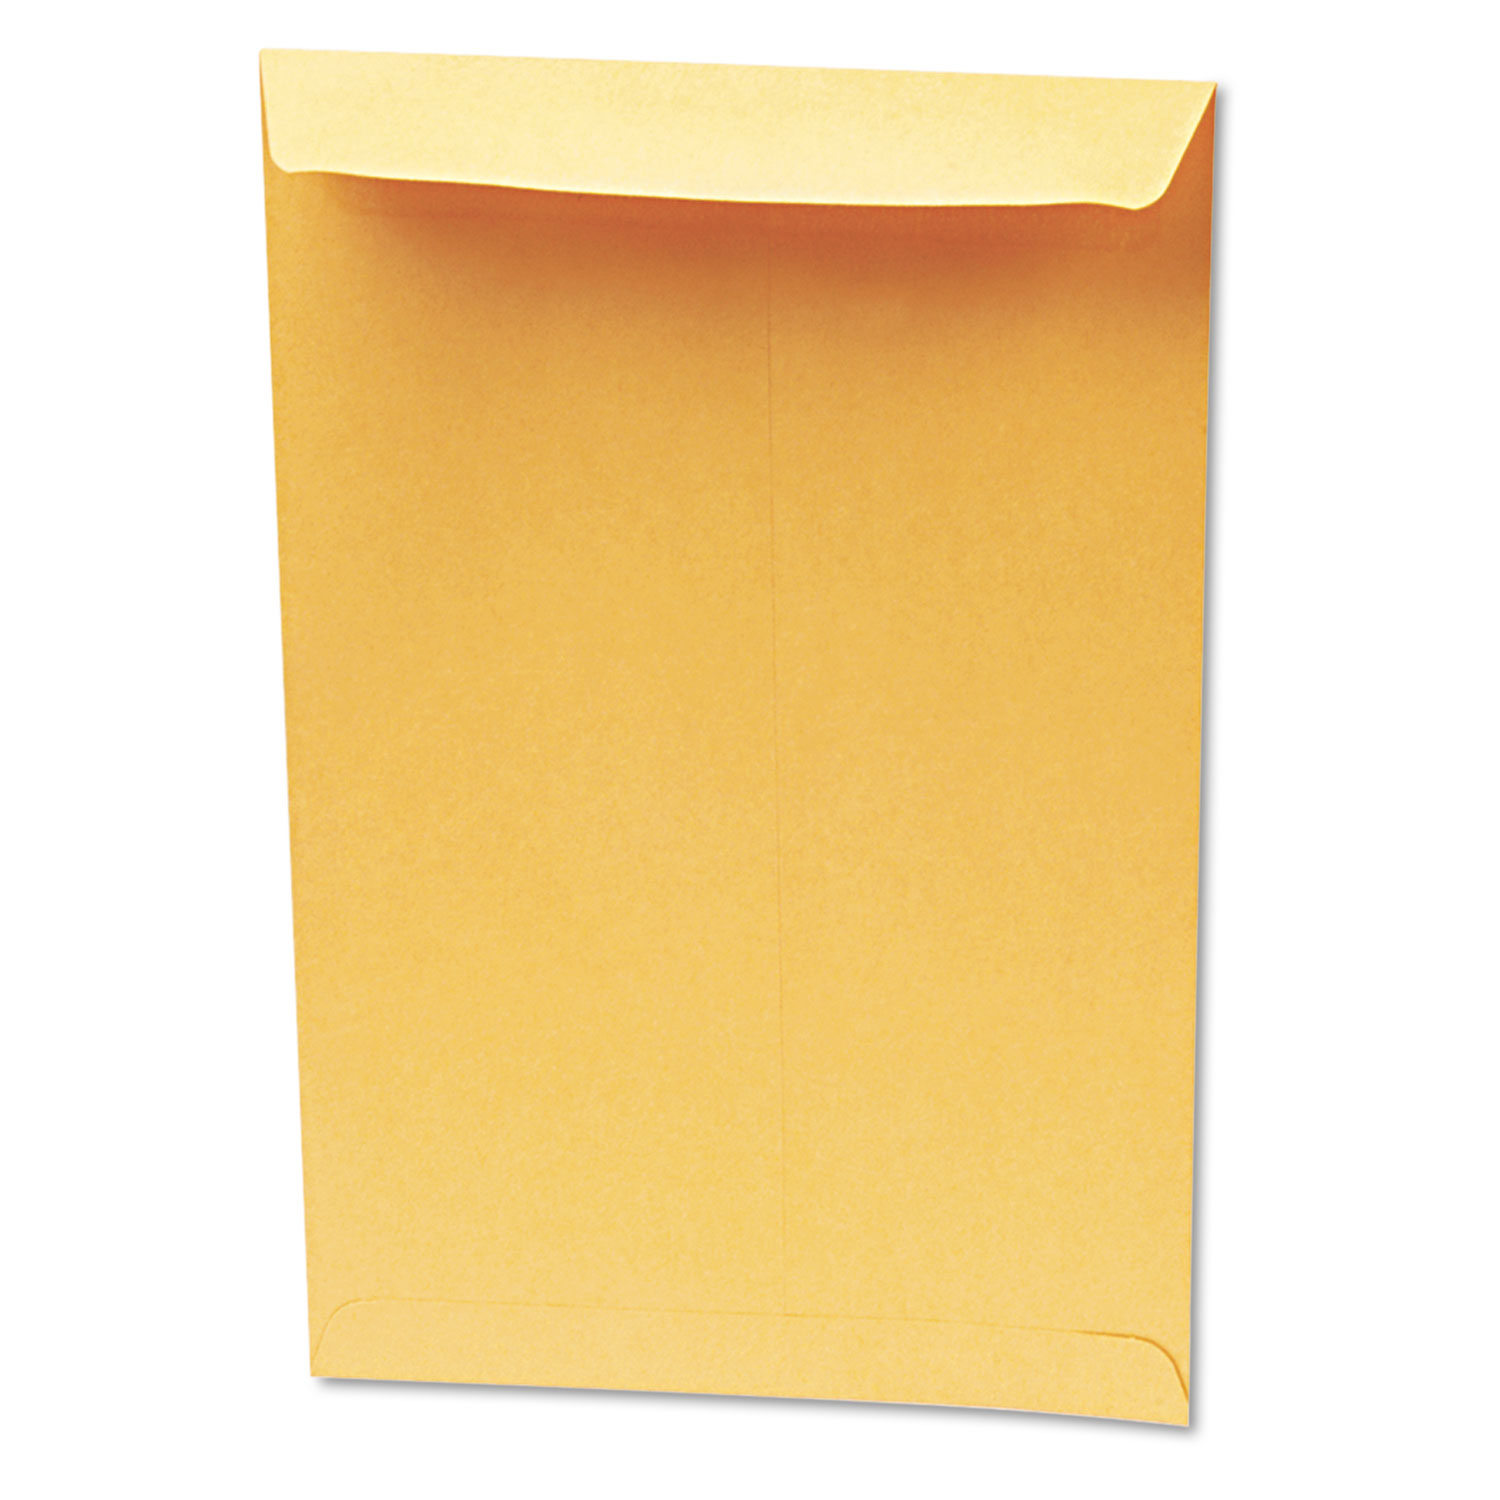 Redi Seal Catalog Envelope, 10 x 15, Brown Kraft, 250/Box